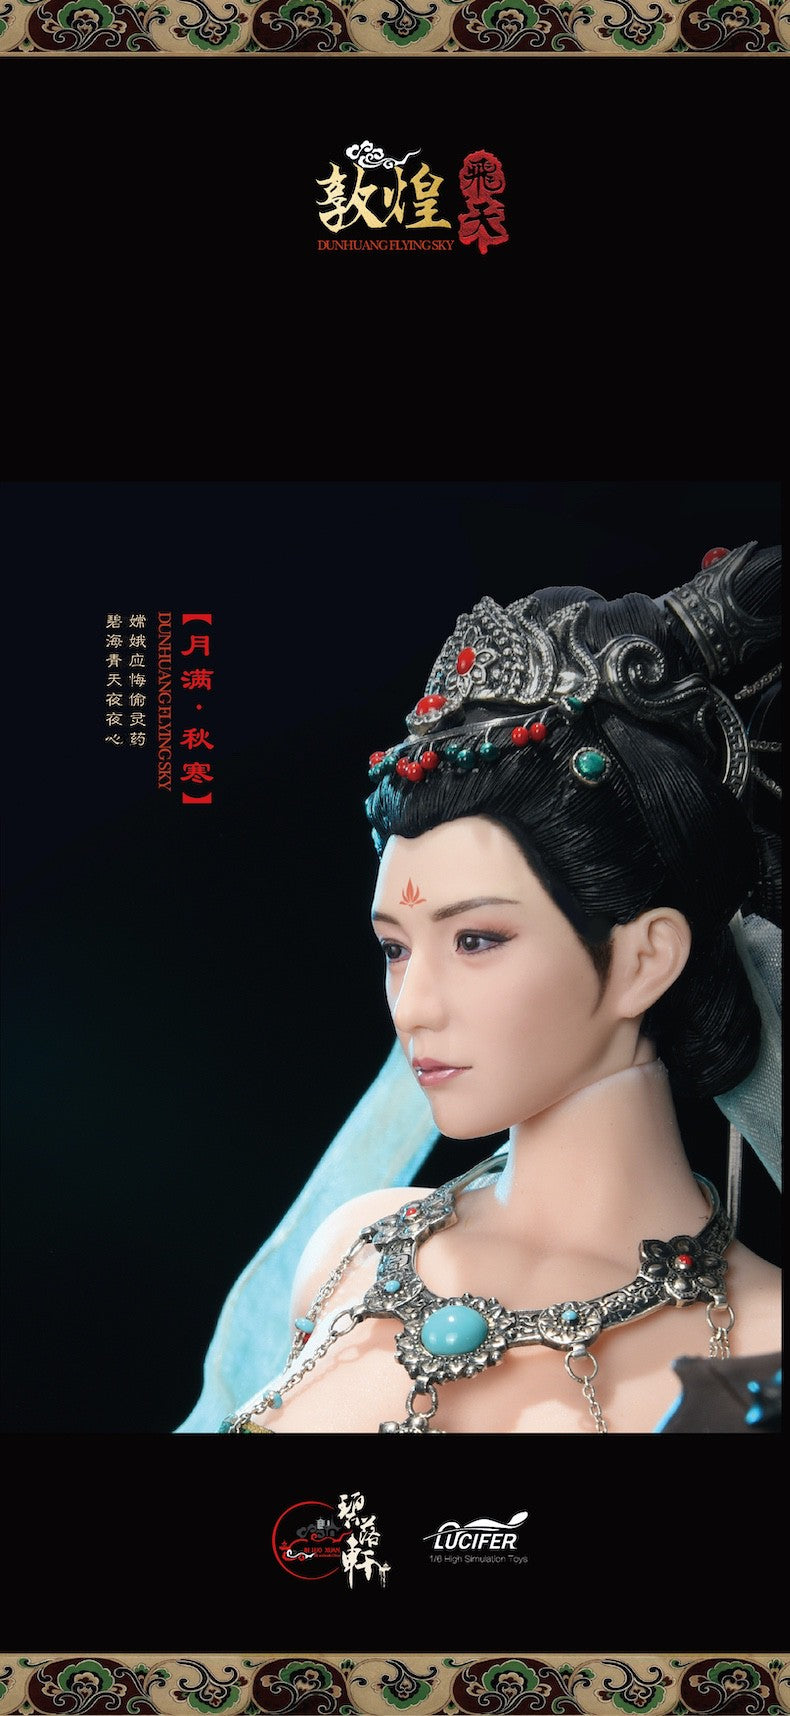 LUCIFER Chang'e / Moon Goddess action figure 1/6 blx201b